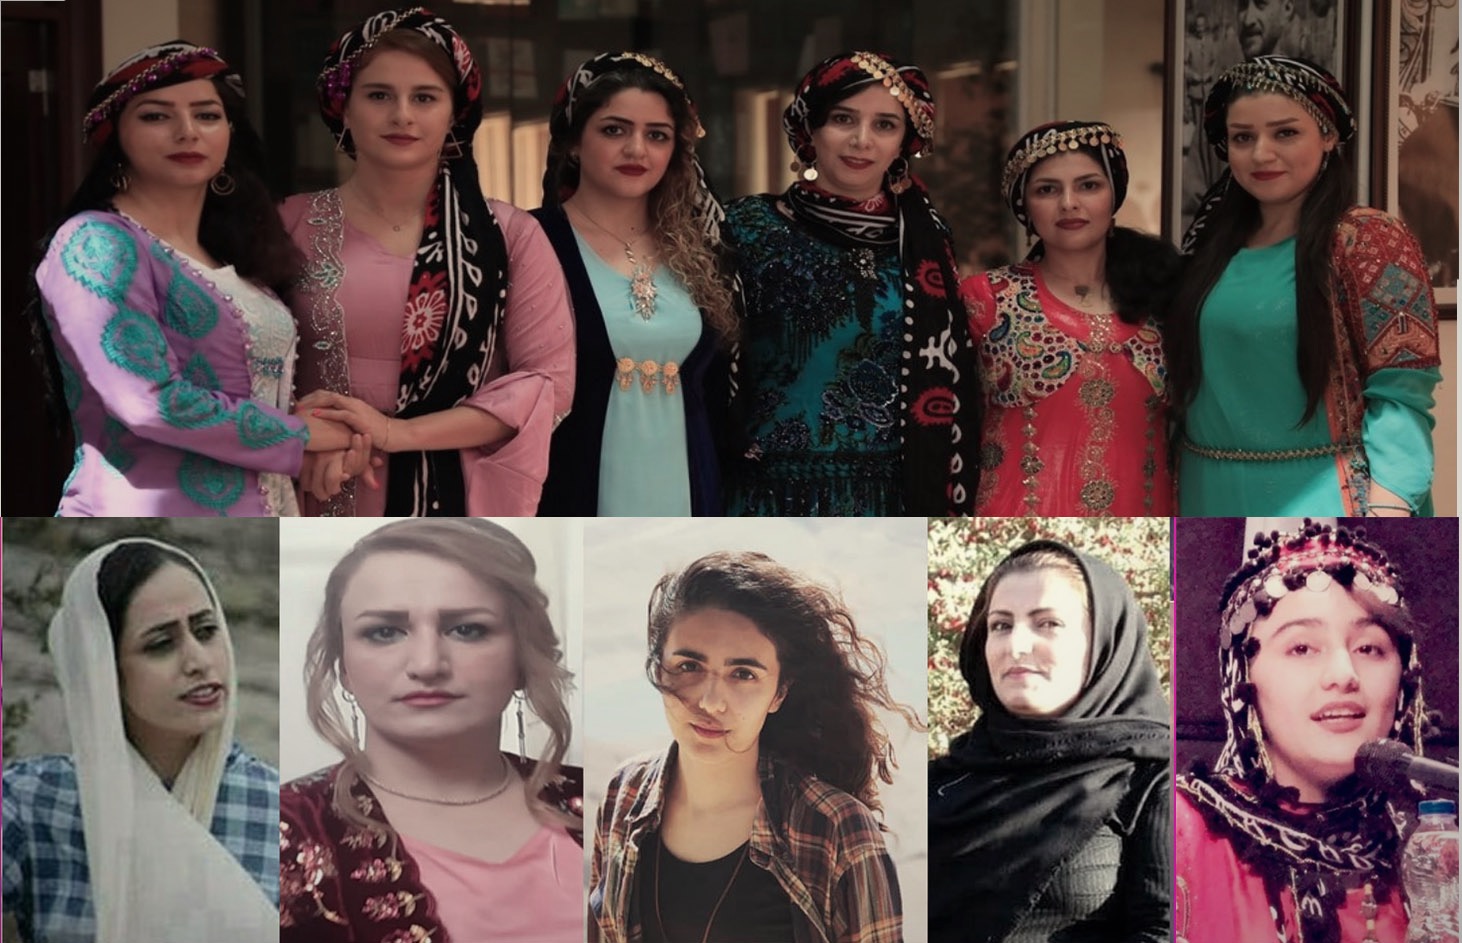 KHRN: Summoning, detention of twelve Kurdish women in the past month